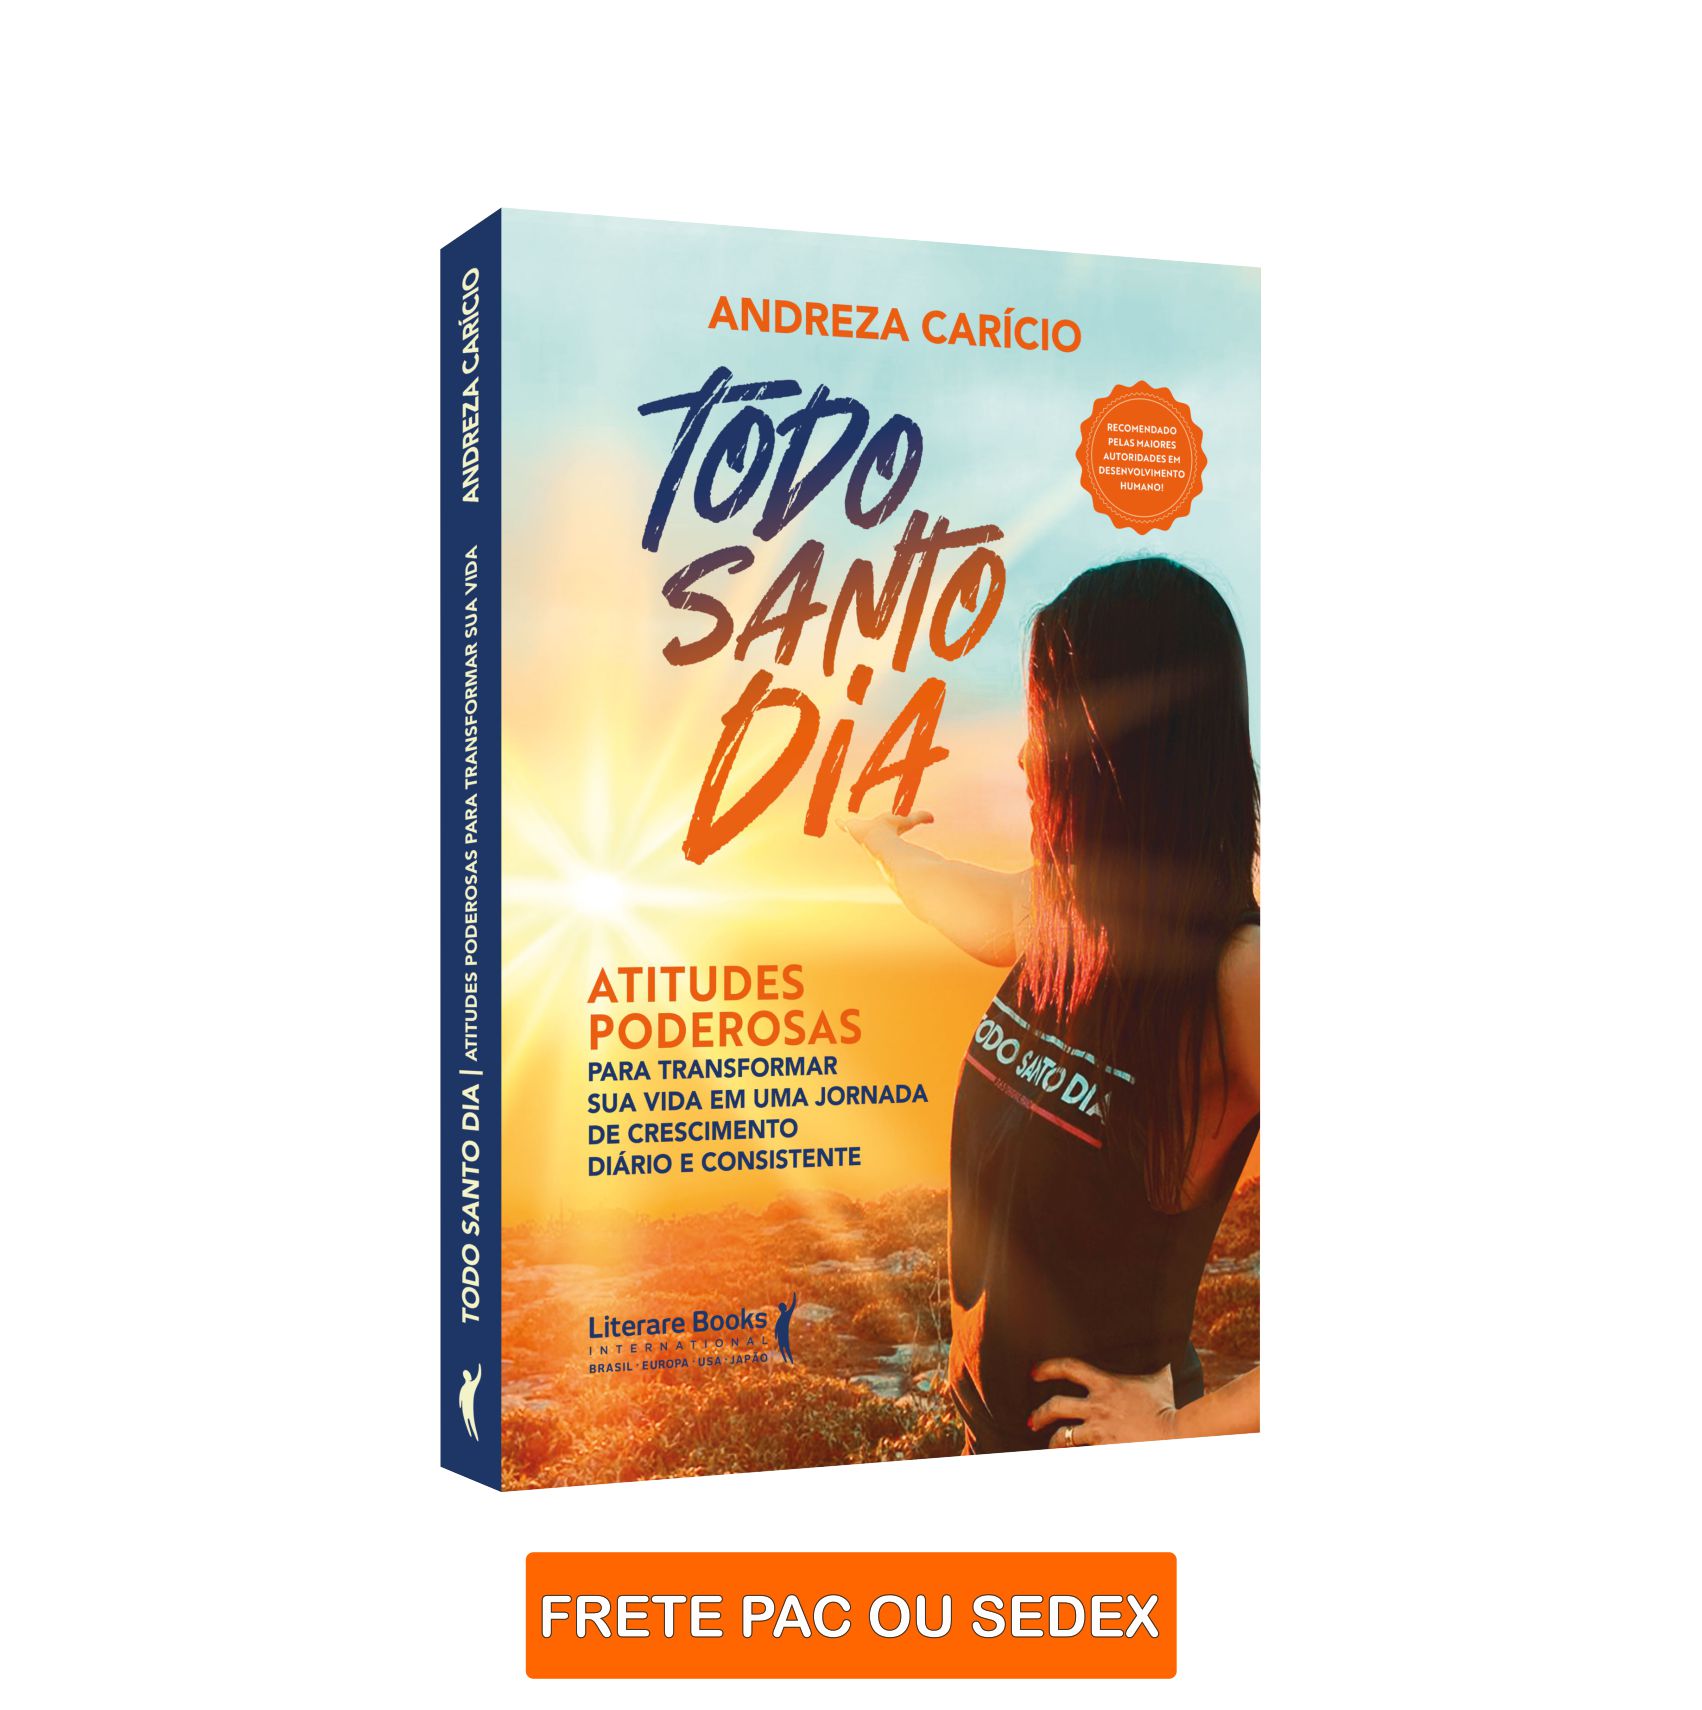 LIVRO BEST SELLER TODO SANTO DIA - ANDREZA CARÍCIO - COM ENVIO OPCIONAL POR PAC OU SEDEX (NÃO INCLUSO)